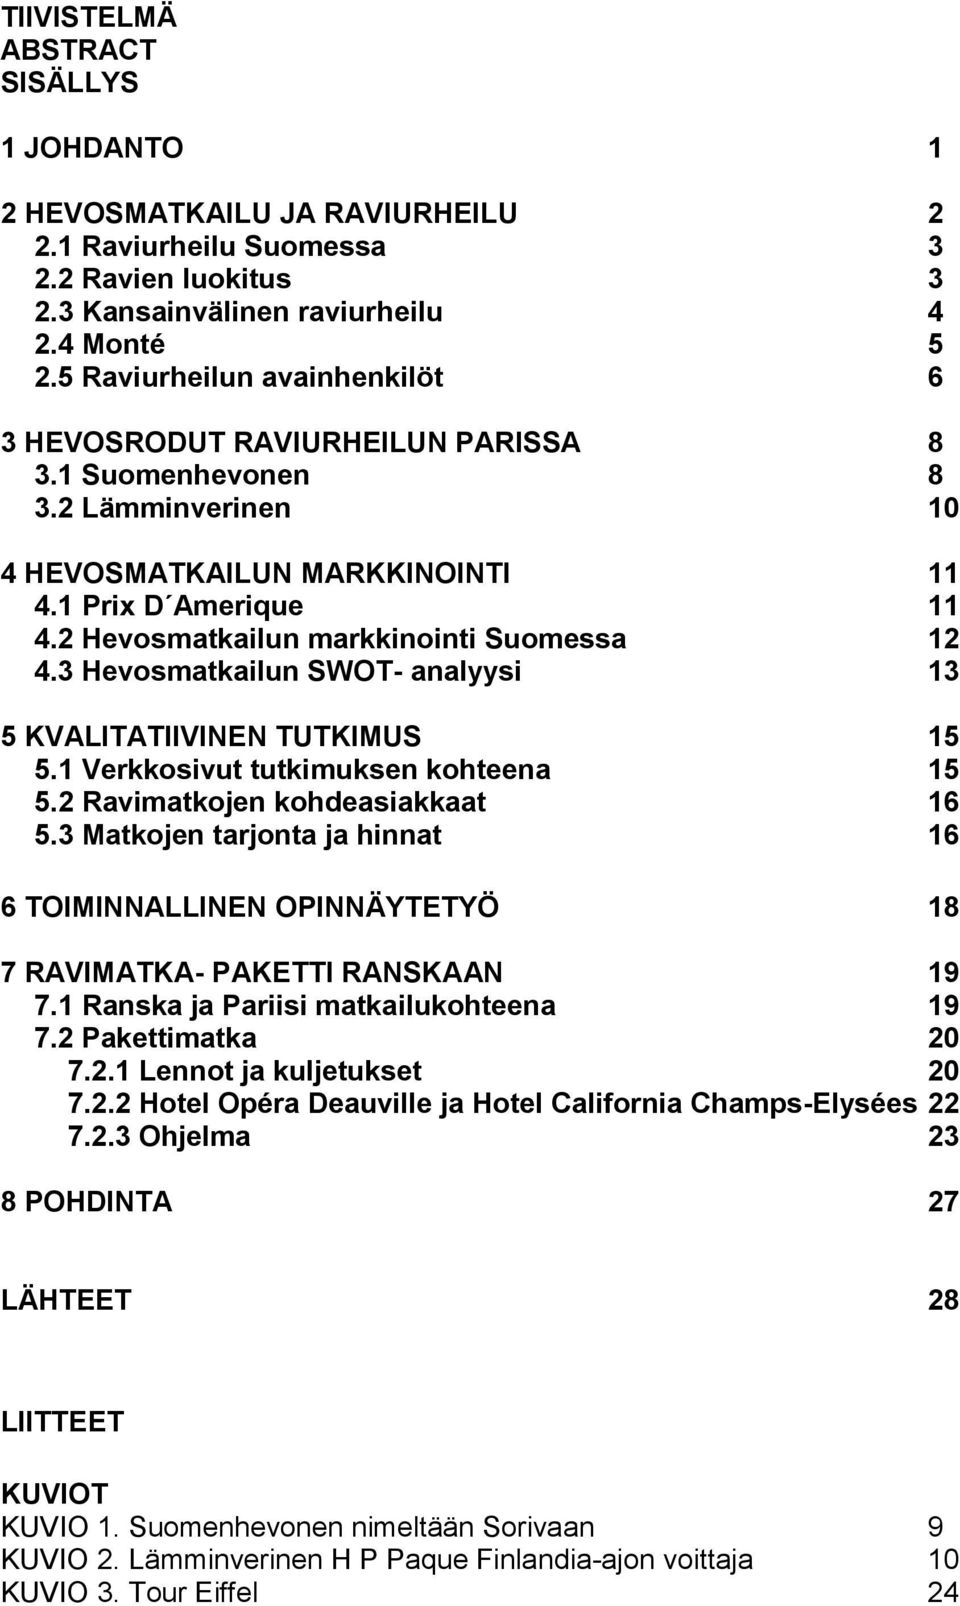 2 Hevosmatkailun markkinointi Suomessa 12 4.3 Hevosmatkailun SWOT- analyysi 13 5 KVALITATIIVINEN TUTKIMUS 15 5.1 Verkkosivut tutkimuksen kohteena 15 5.2 Ravimatkojen kohdeasiakkaat 16 5.